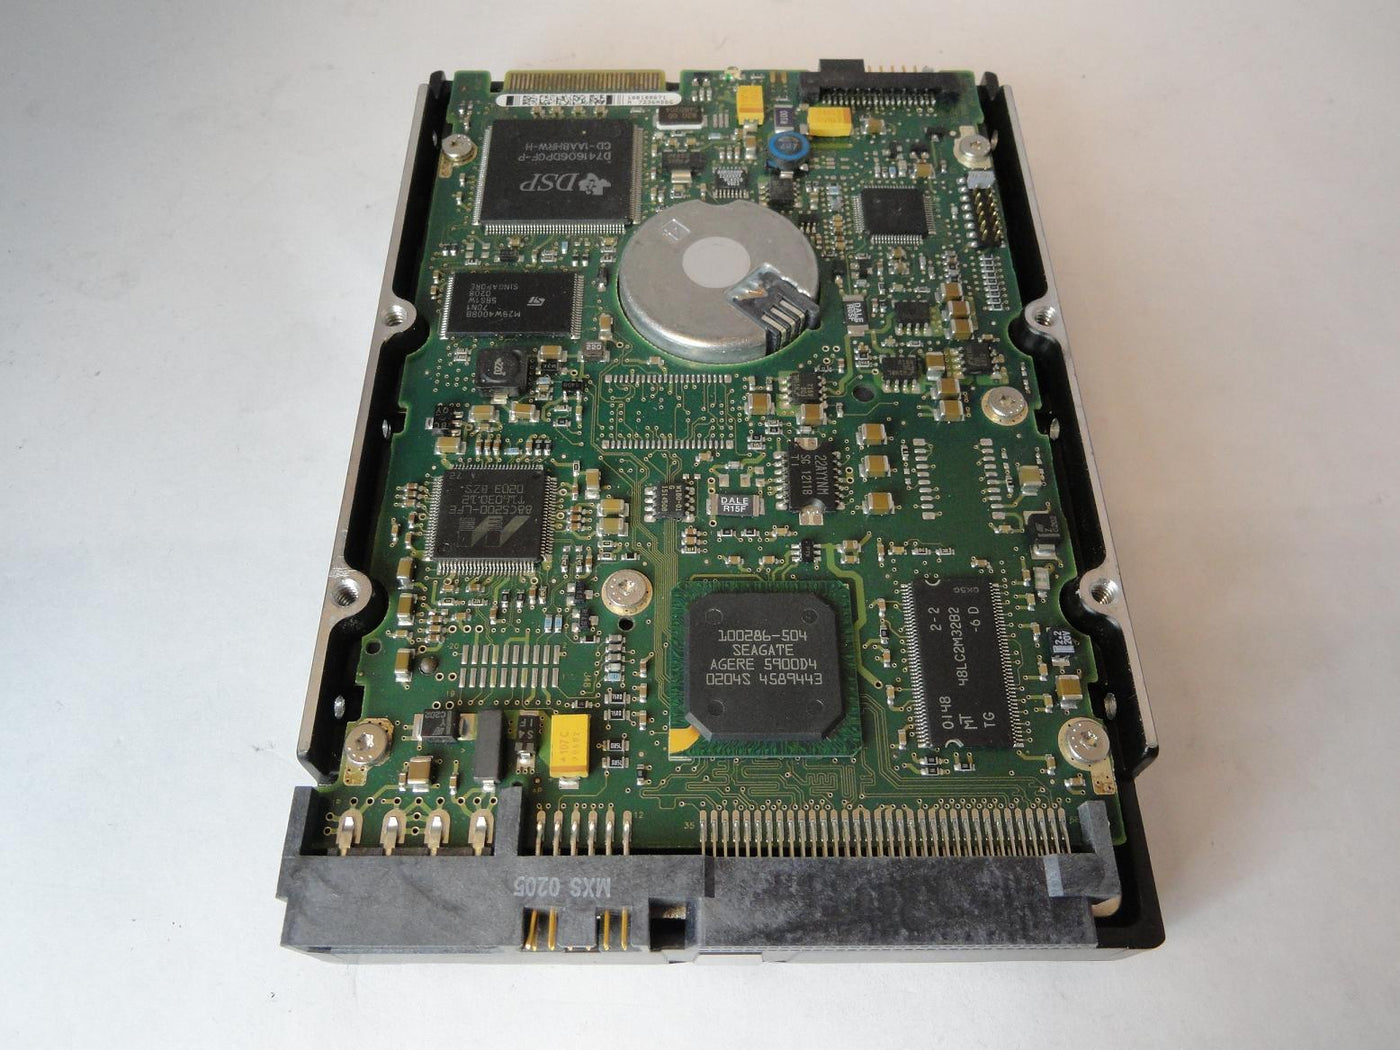 PR22085_9T4005-001_Seagate 18.4GB SCSI 68 Pin 15Krpm 3.5in HDD - Image2